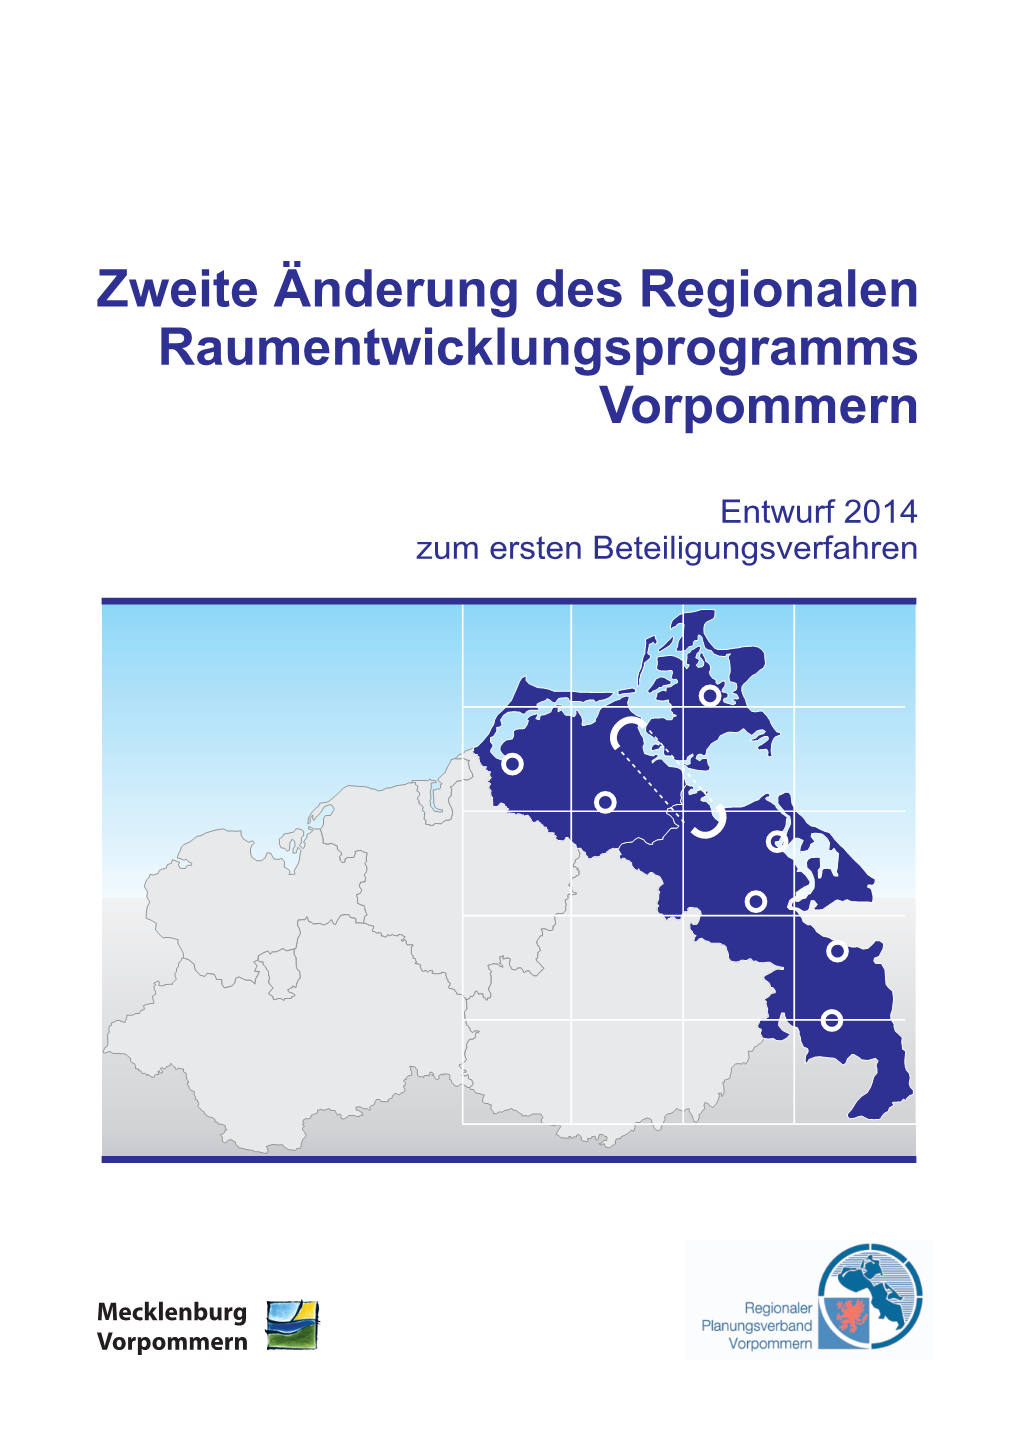 Mecklenburg Vorpommern Regionaler Planungsverband Vorpommern